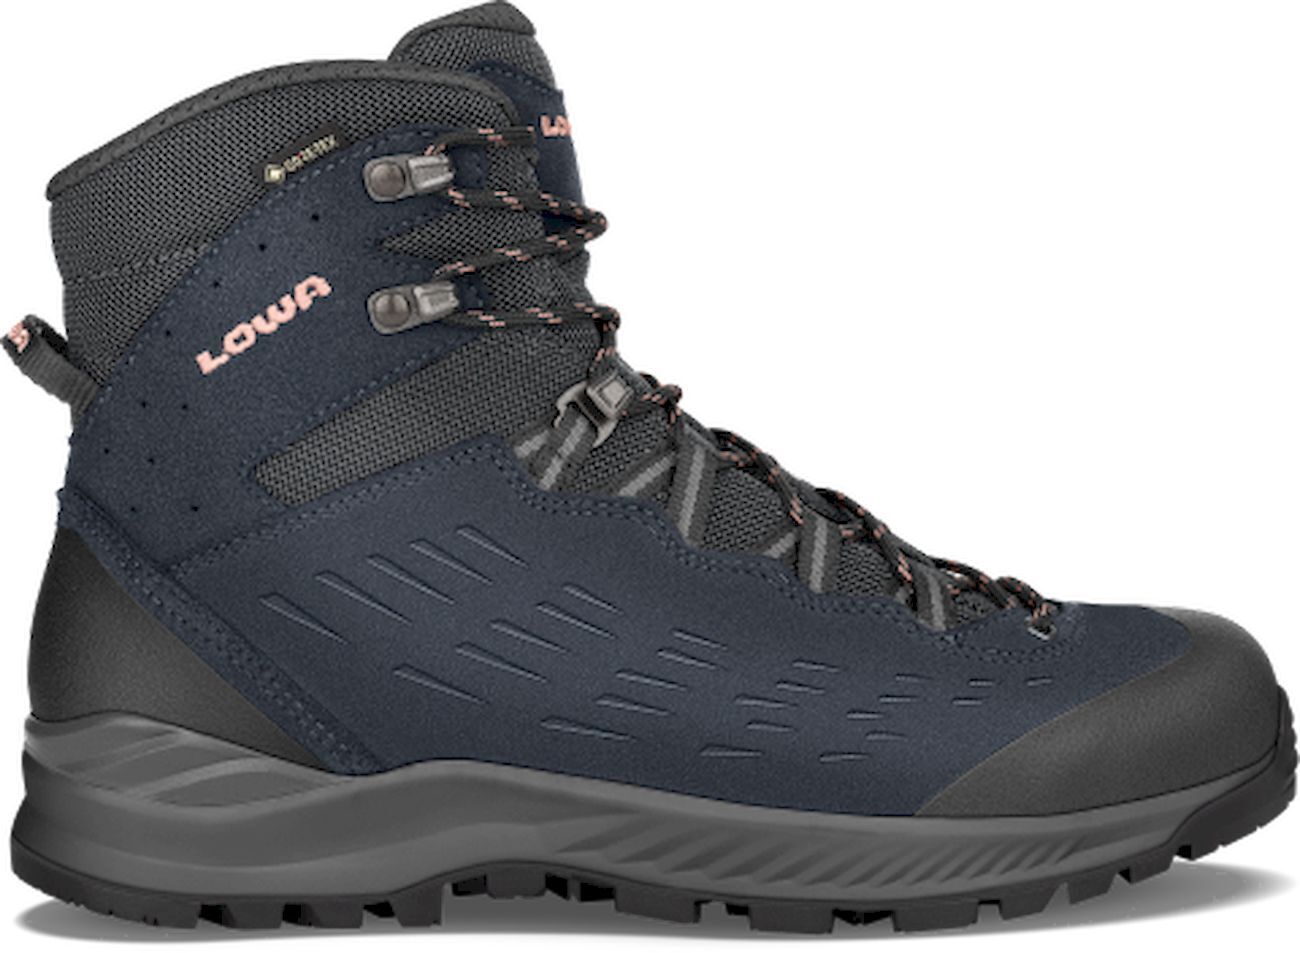 Lowa Explorer ll GTX Mid - Hiking boots - Women's